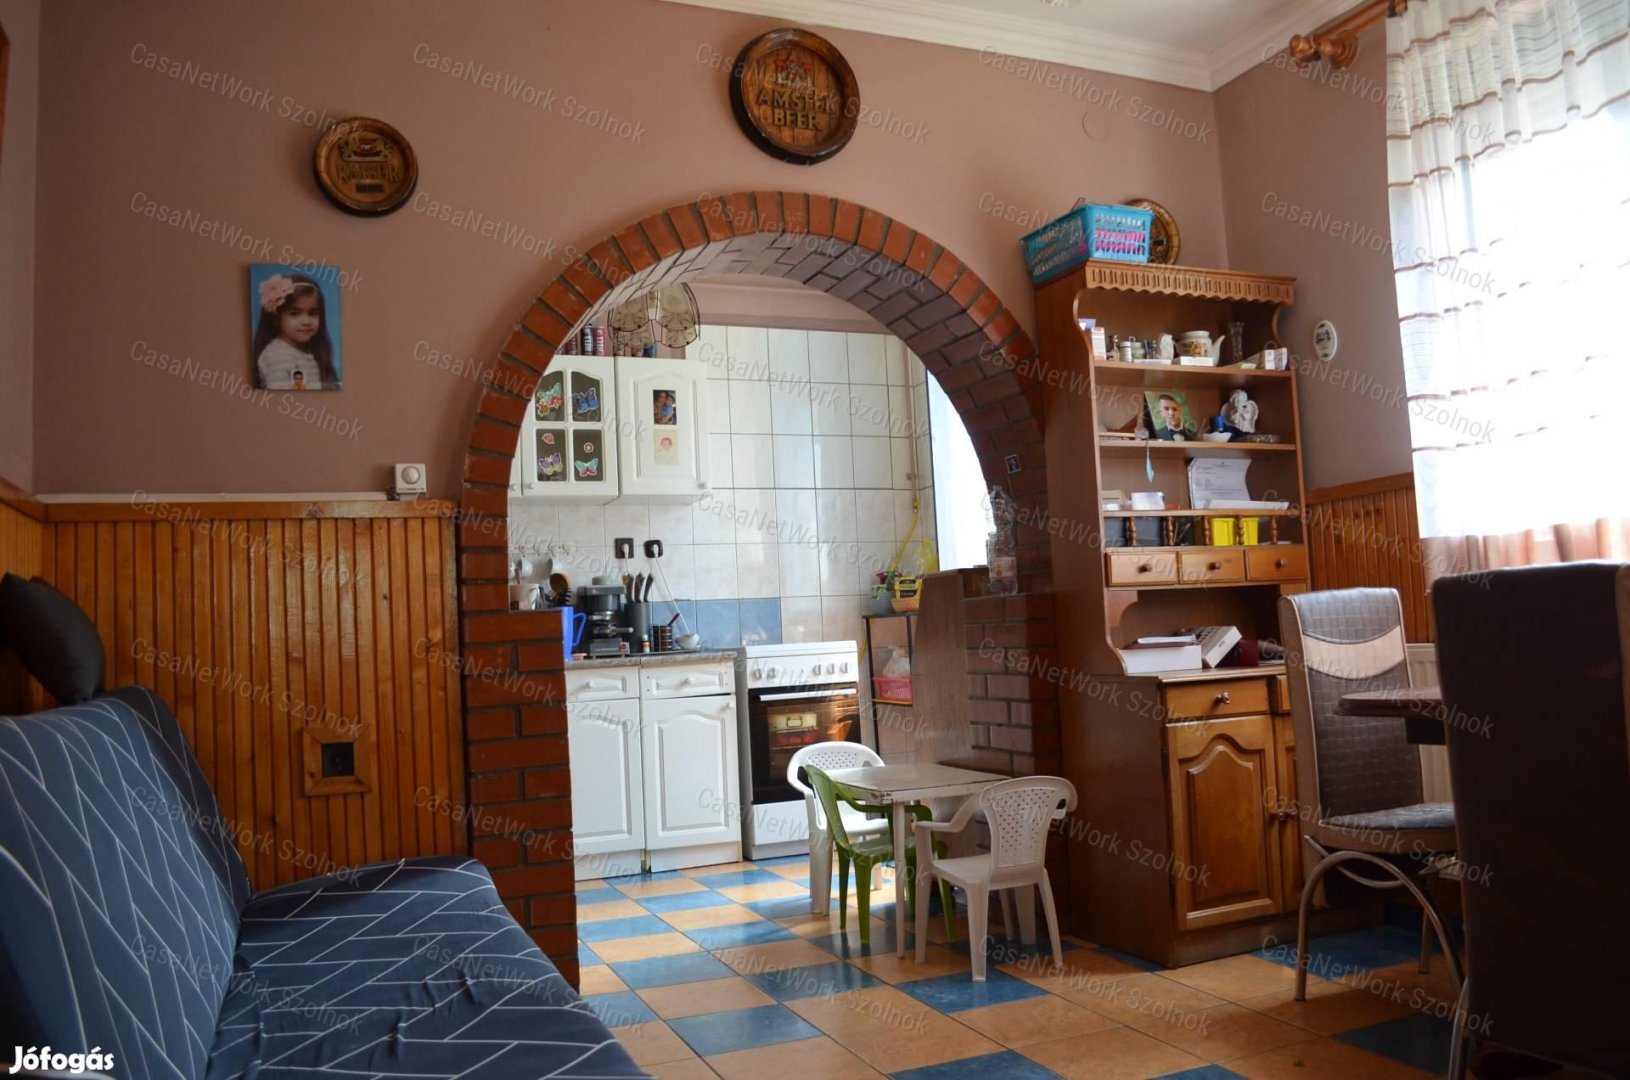 Szolnokon Partoskápolna városrészben eladó egy 105 nm-es családi ház